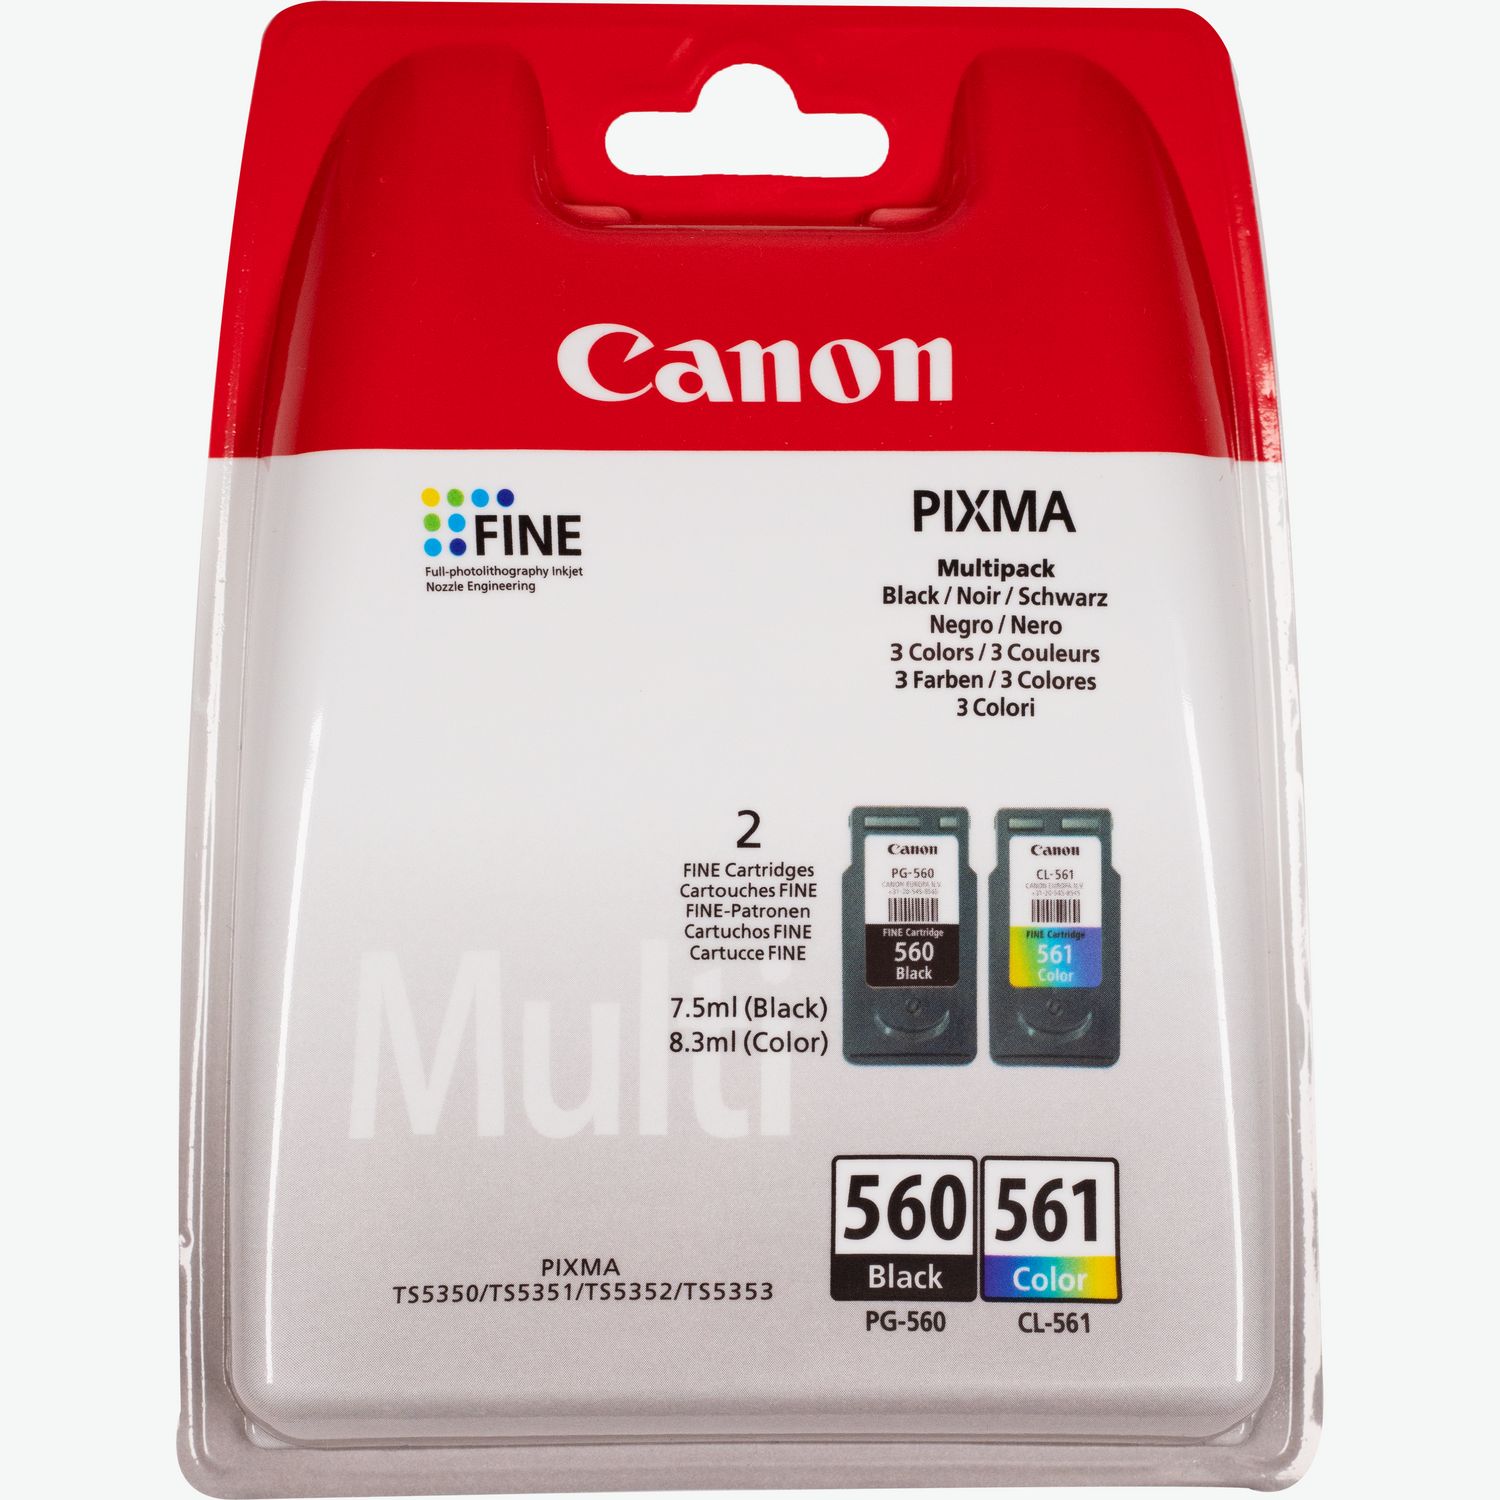 Canon PIXMA TS5350 Imprimante Multifonction Couleur